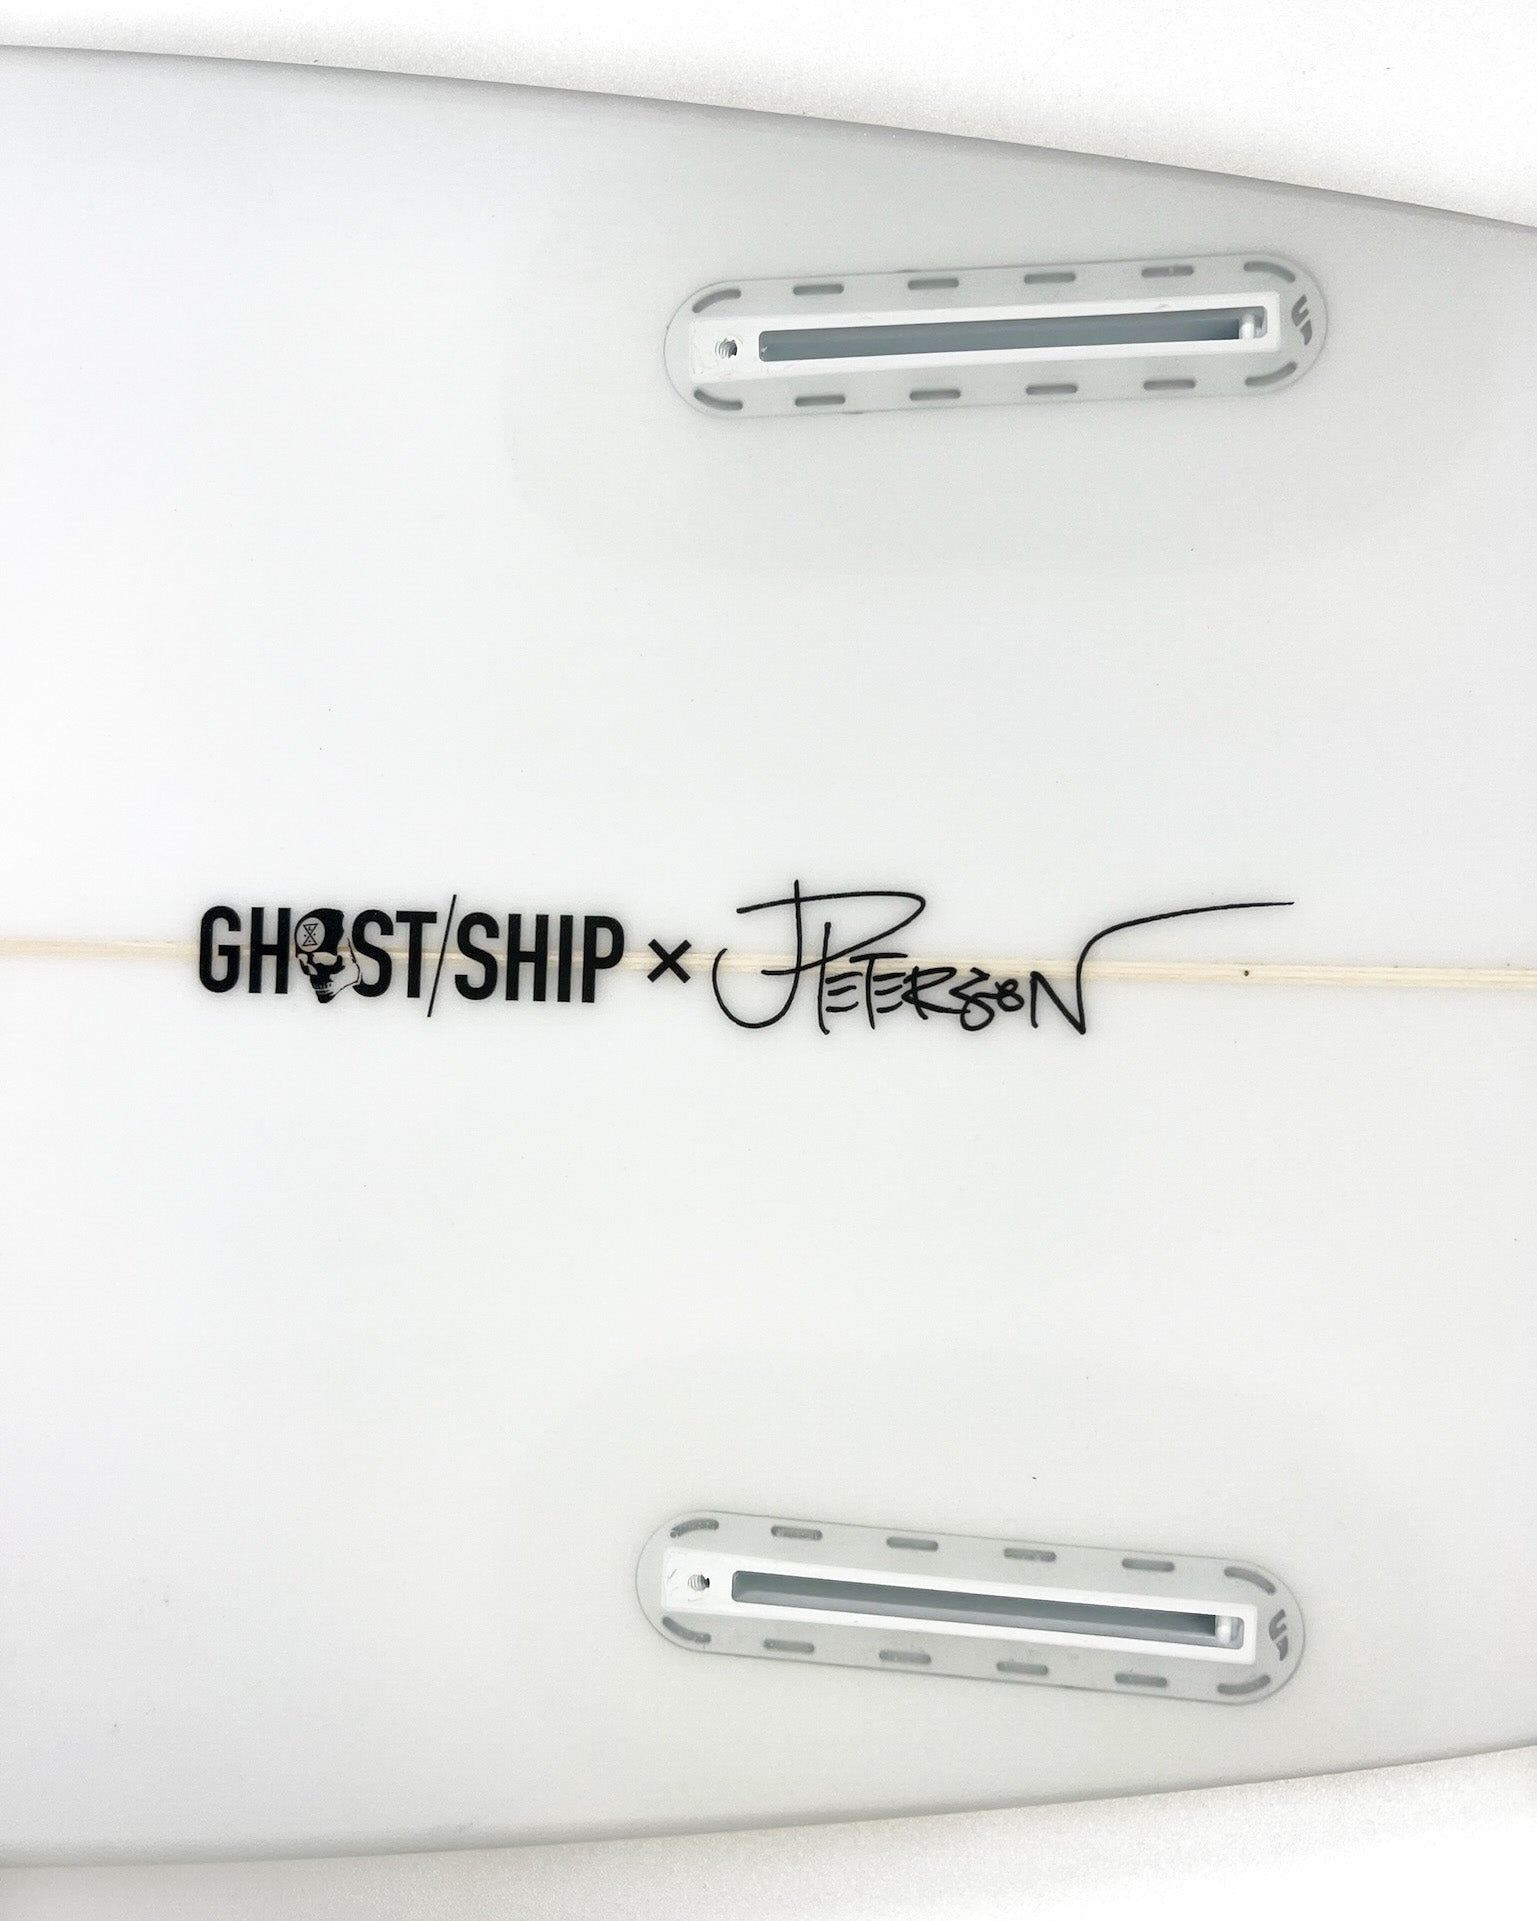 Ghost Ship x Josh Peterson Rorschach Fish Surfboard 5’6” - GHOSTSHIP.Supply